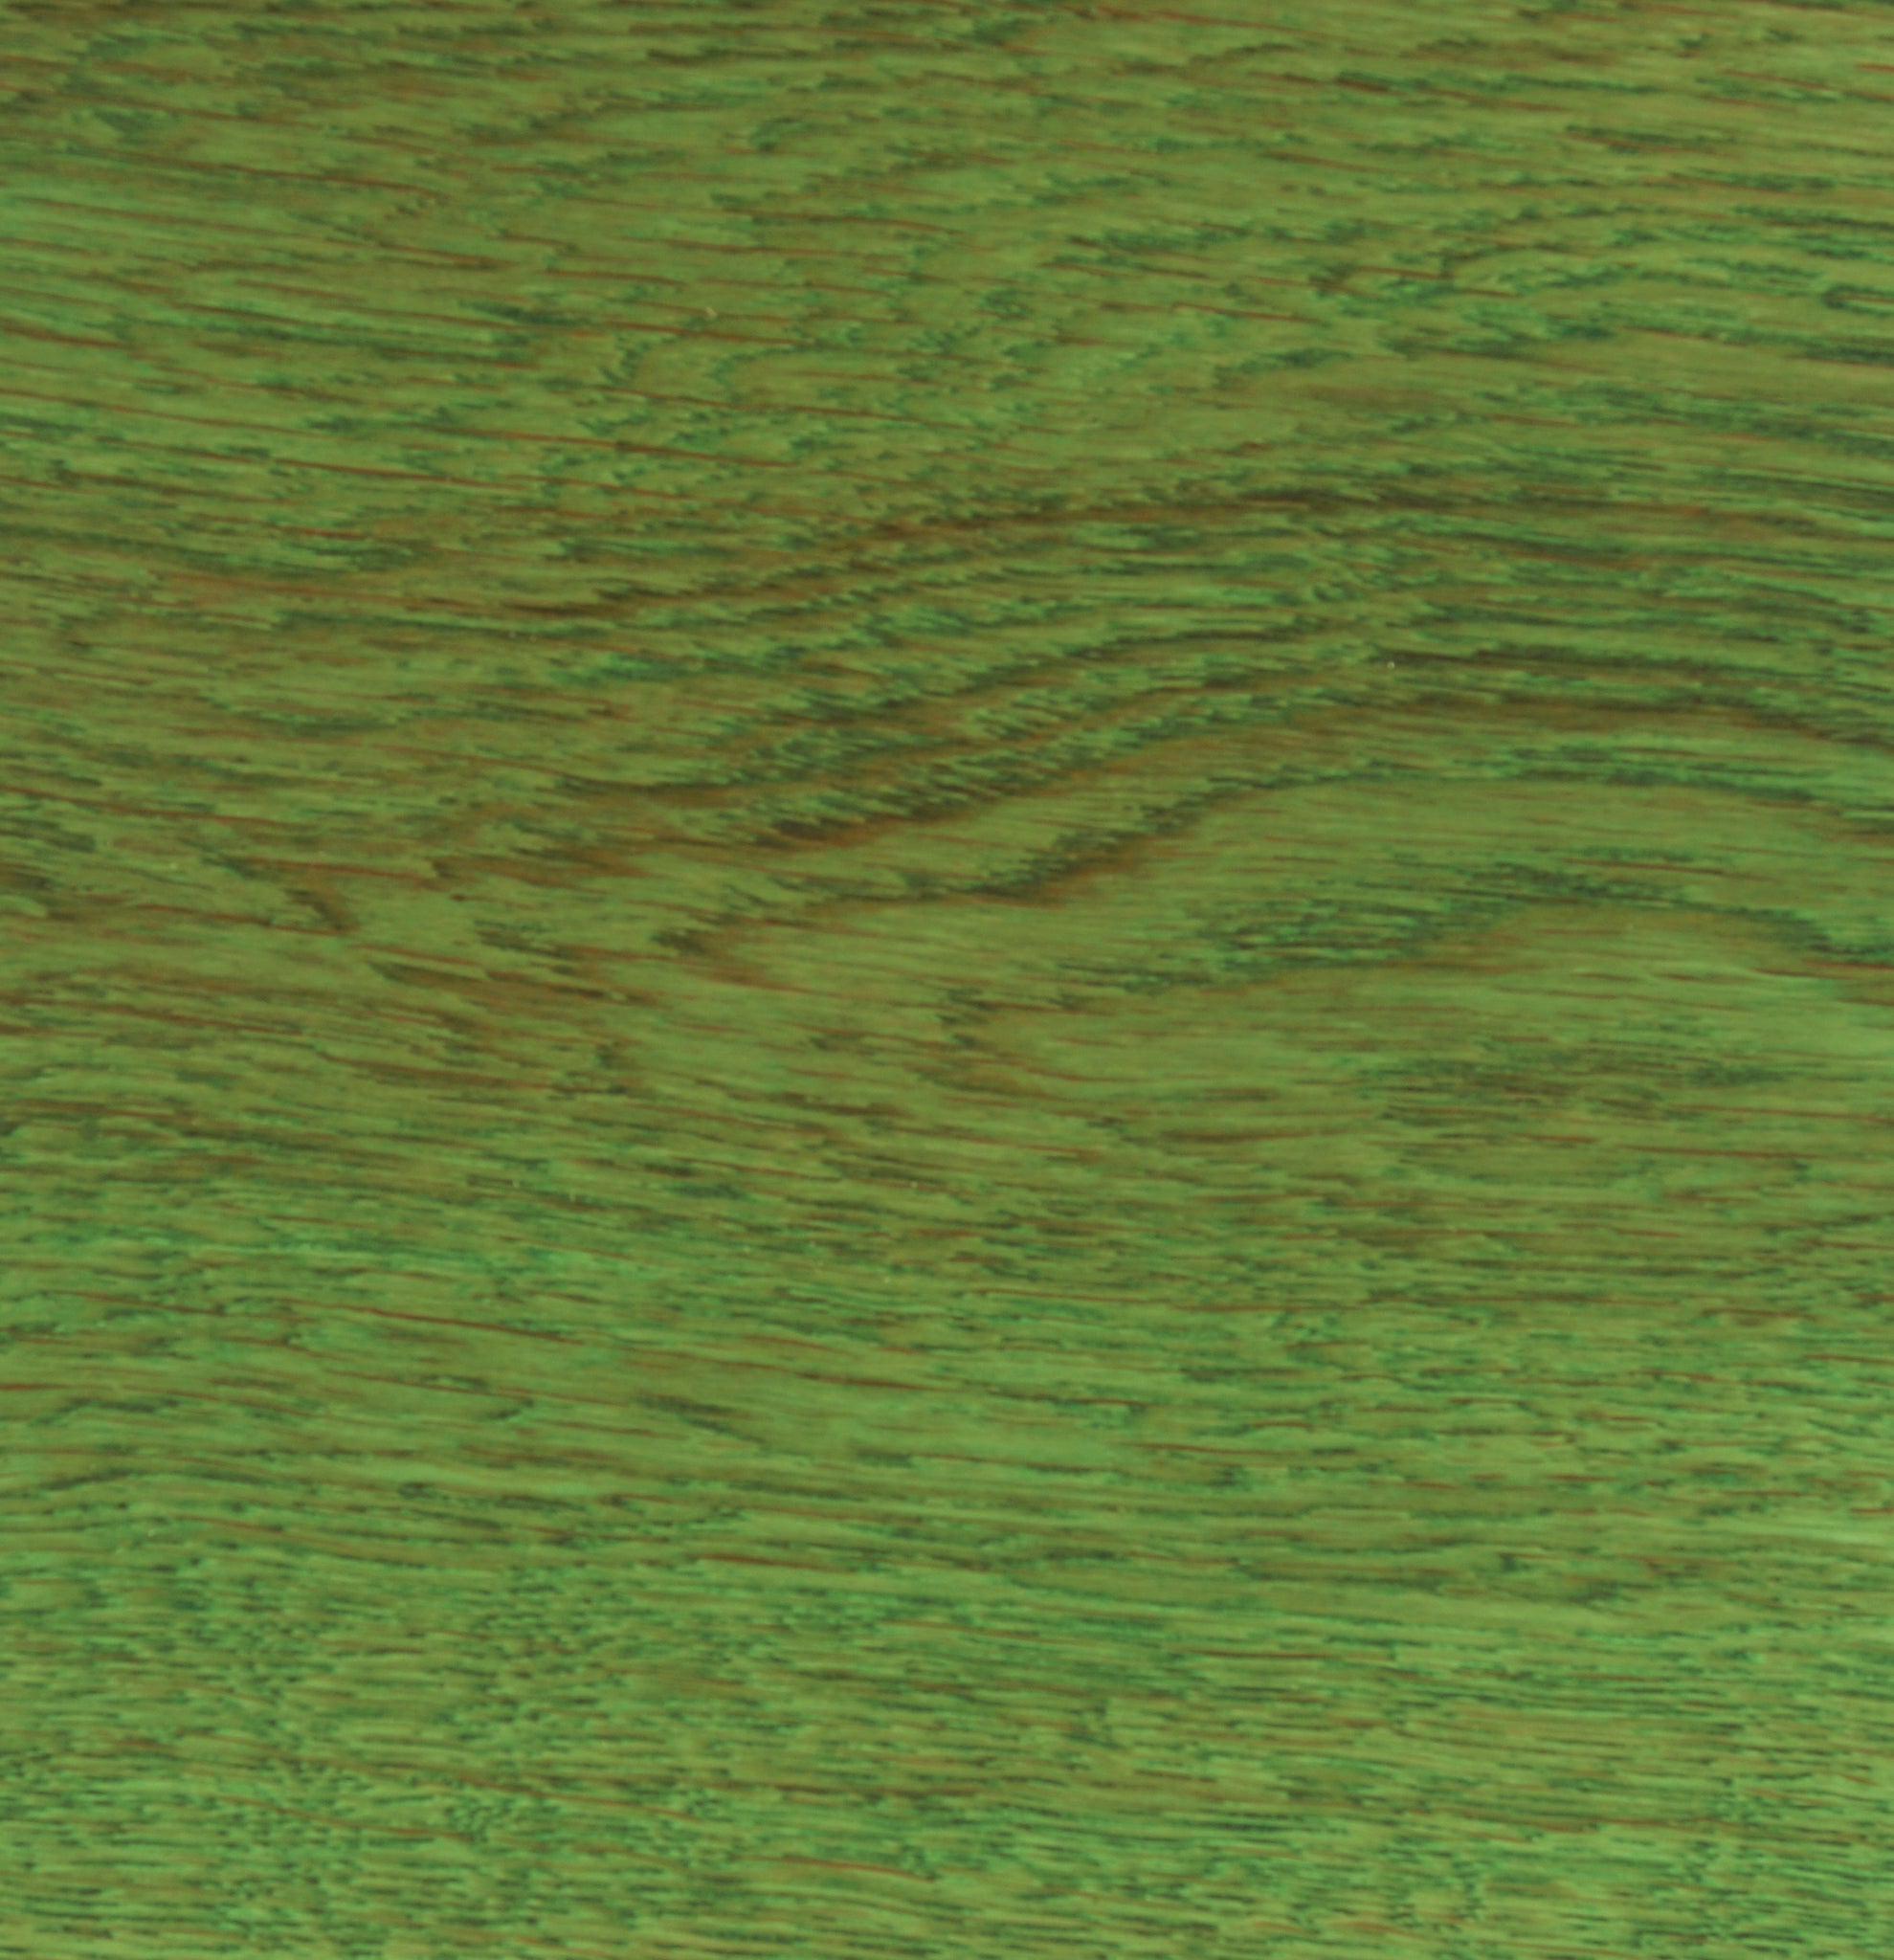 Mono verde foto de archivo. Imagen de madera, organismo - 81369706